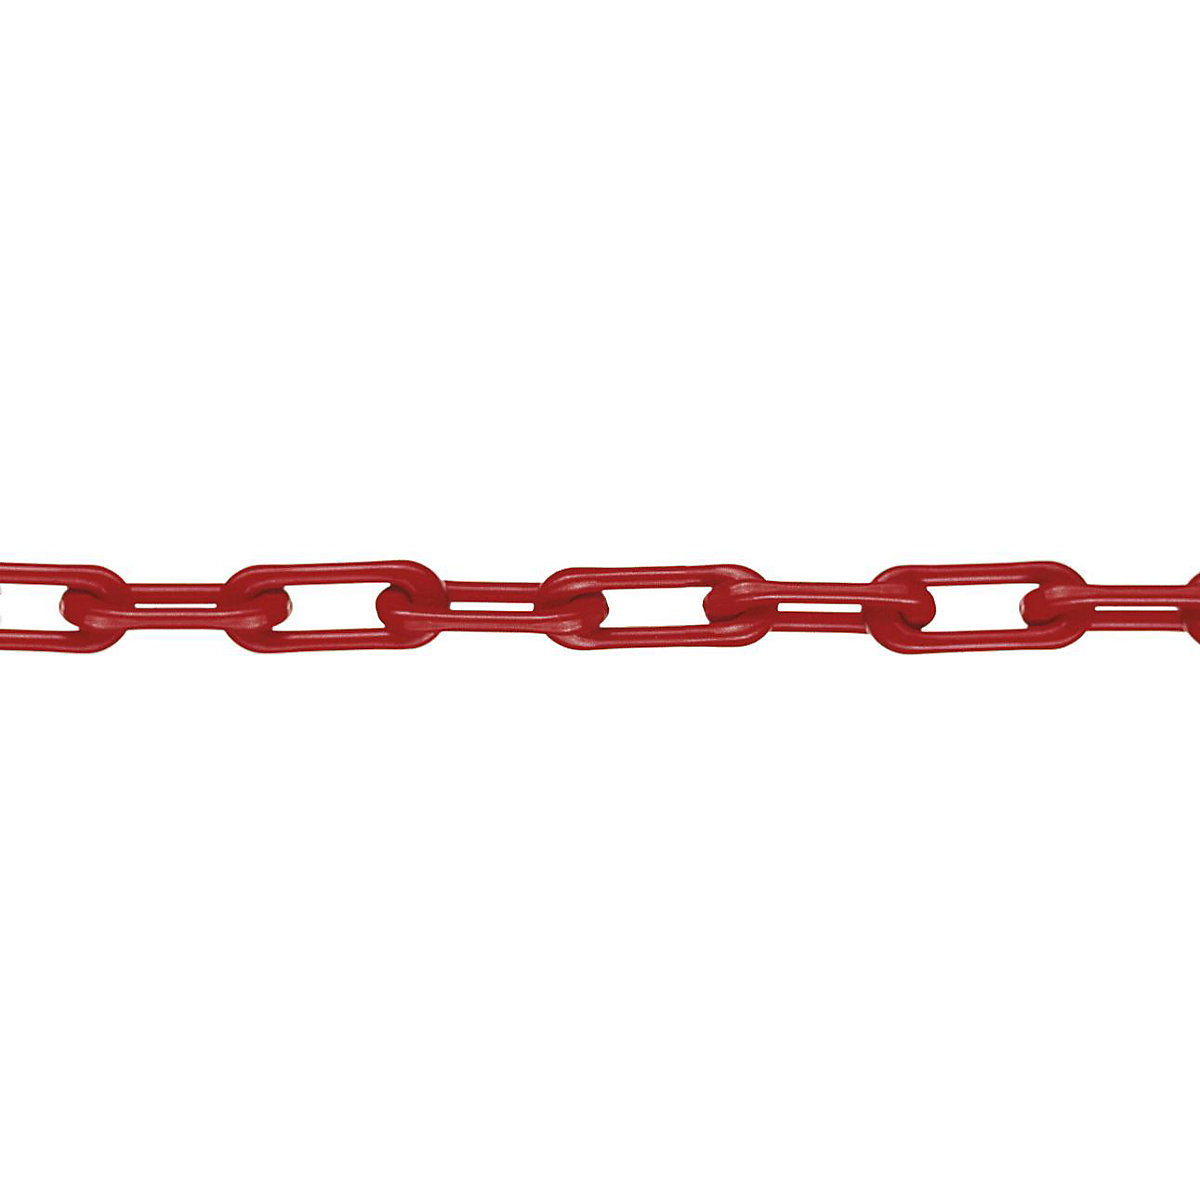 Łańcuch z nylonu, jakość MNK 6, dł. wiązki 50 m, czerwony, od 4 szt.-4